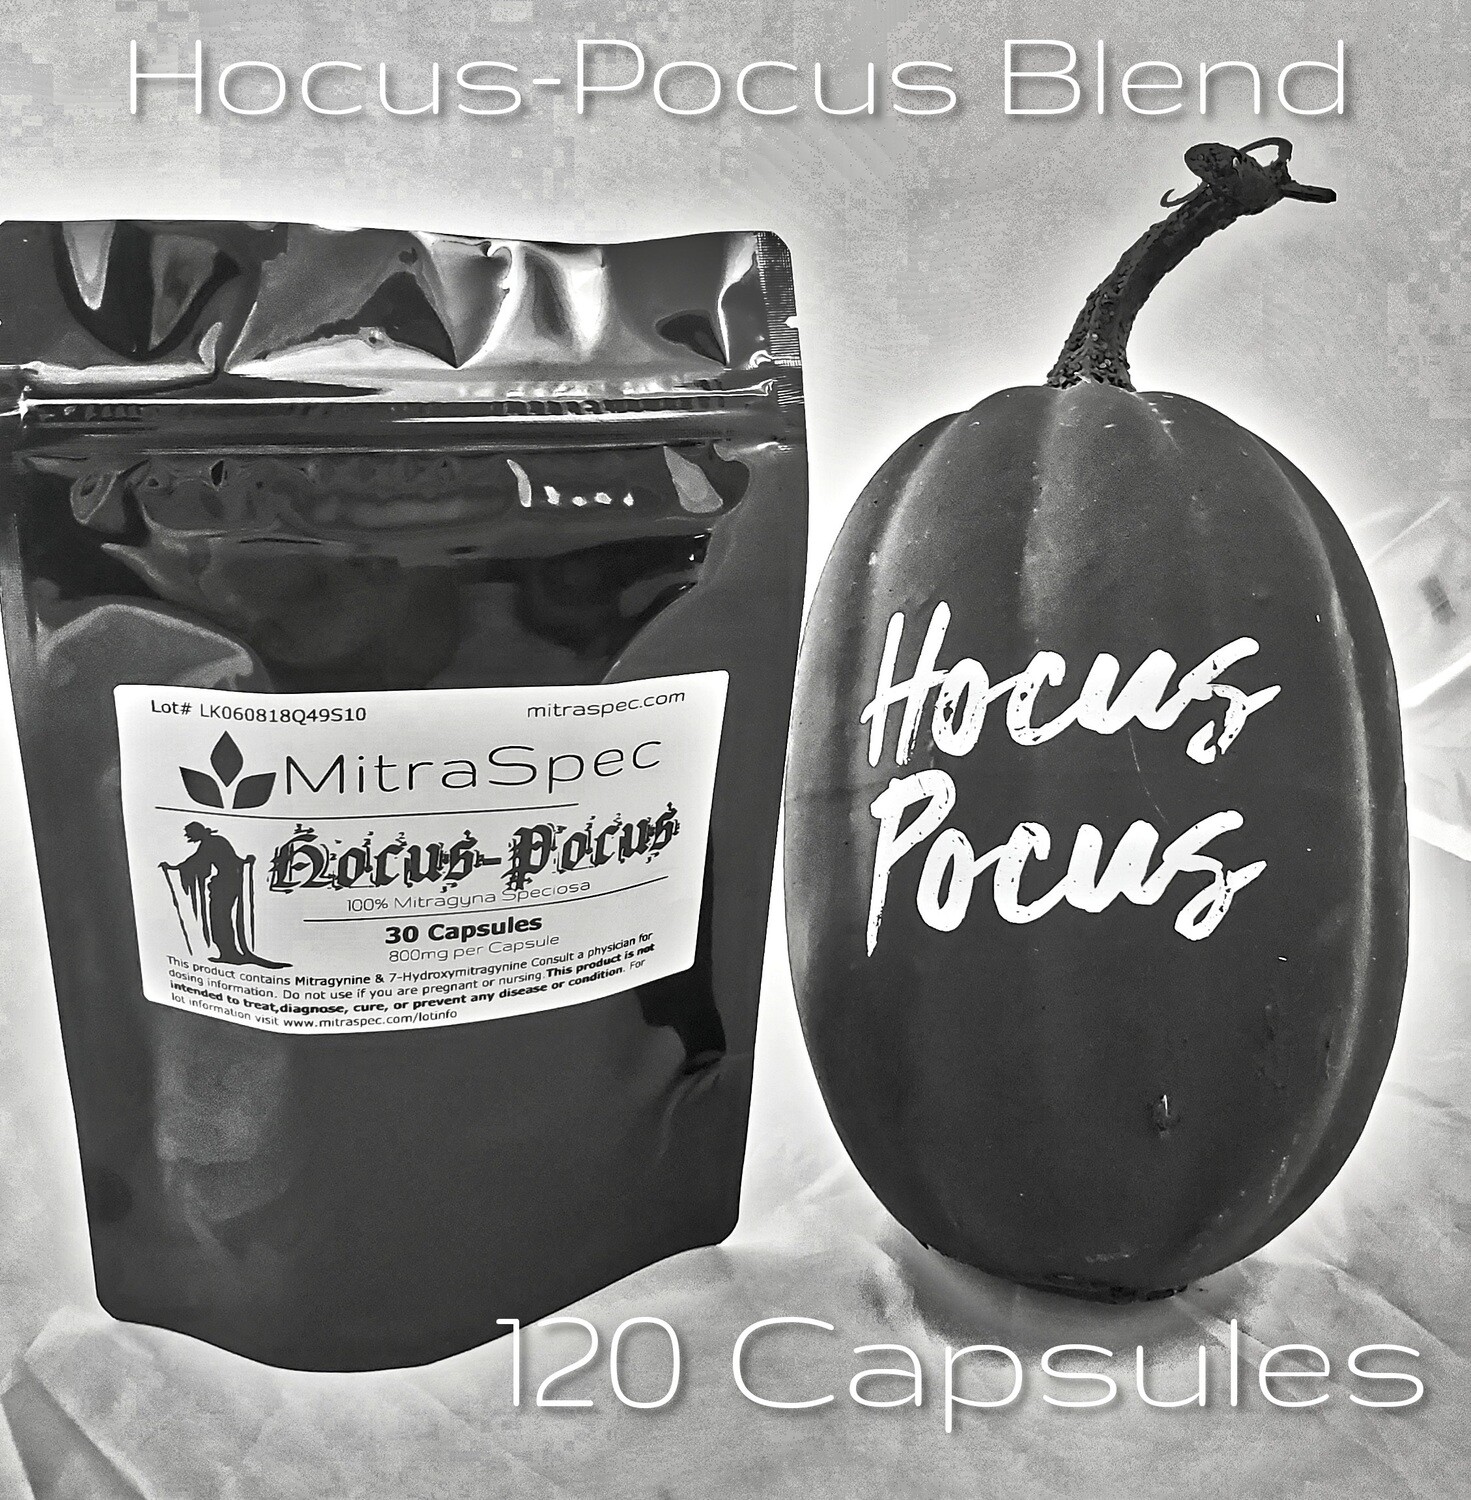 Hocus-Pocus Kratom Blend - 100 Capsules